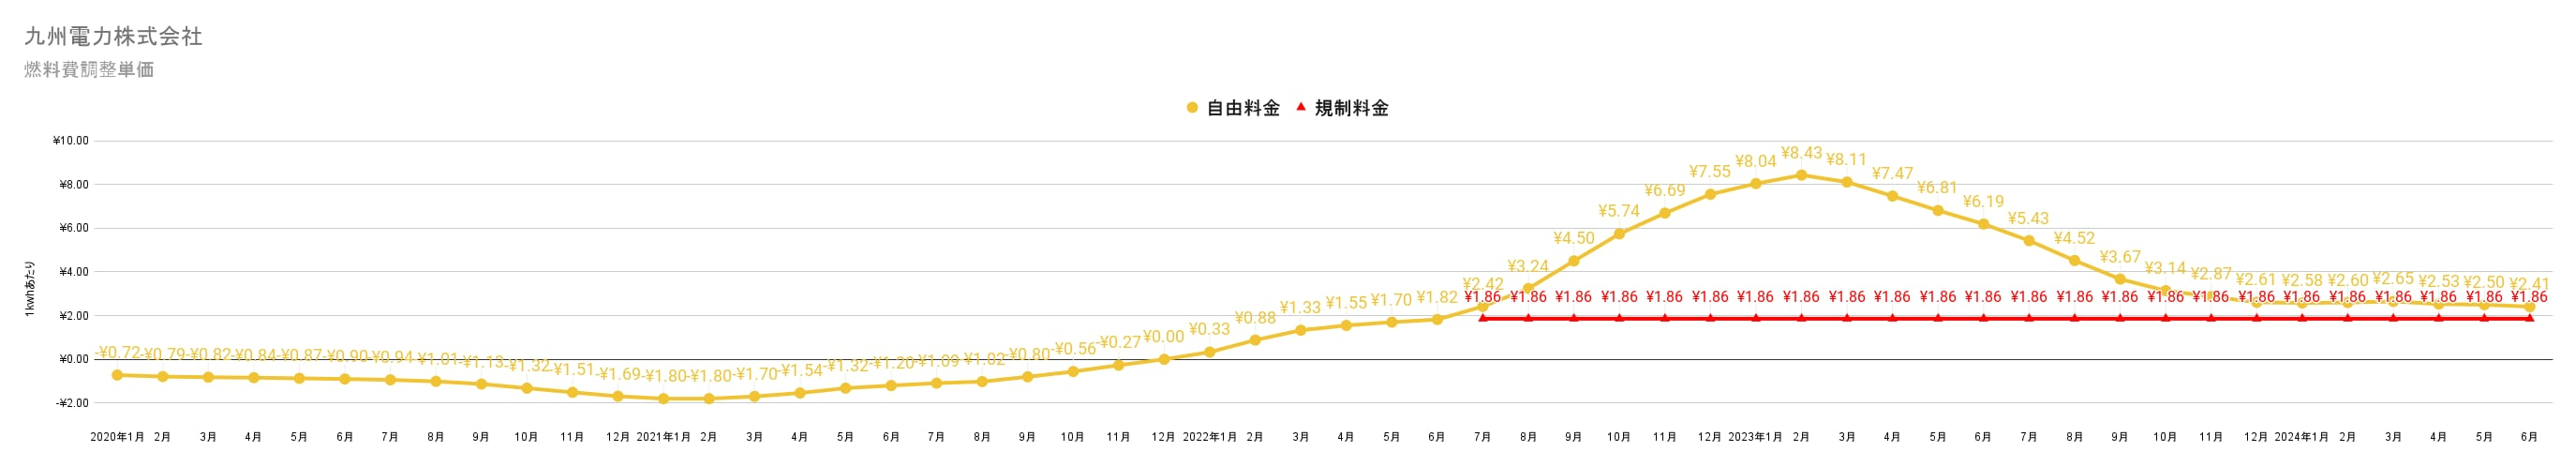 九州電力の燃料費調整額単価　過去3年間の推移グラフ